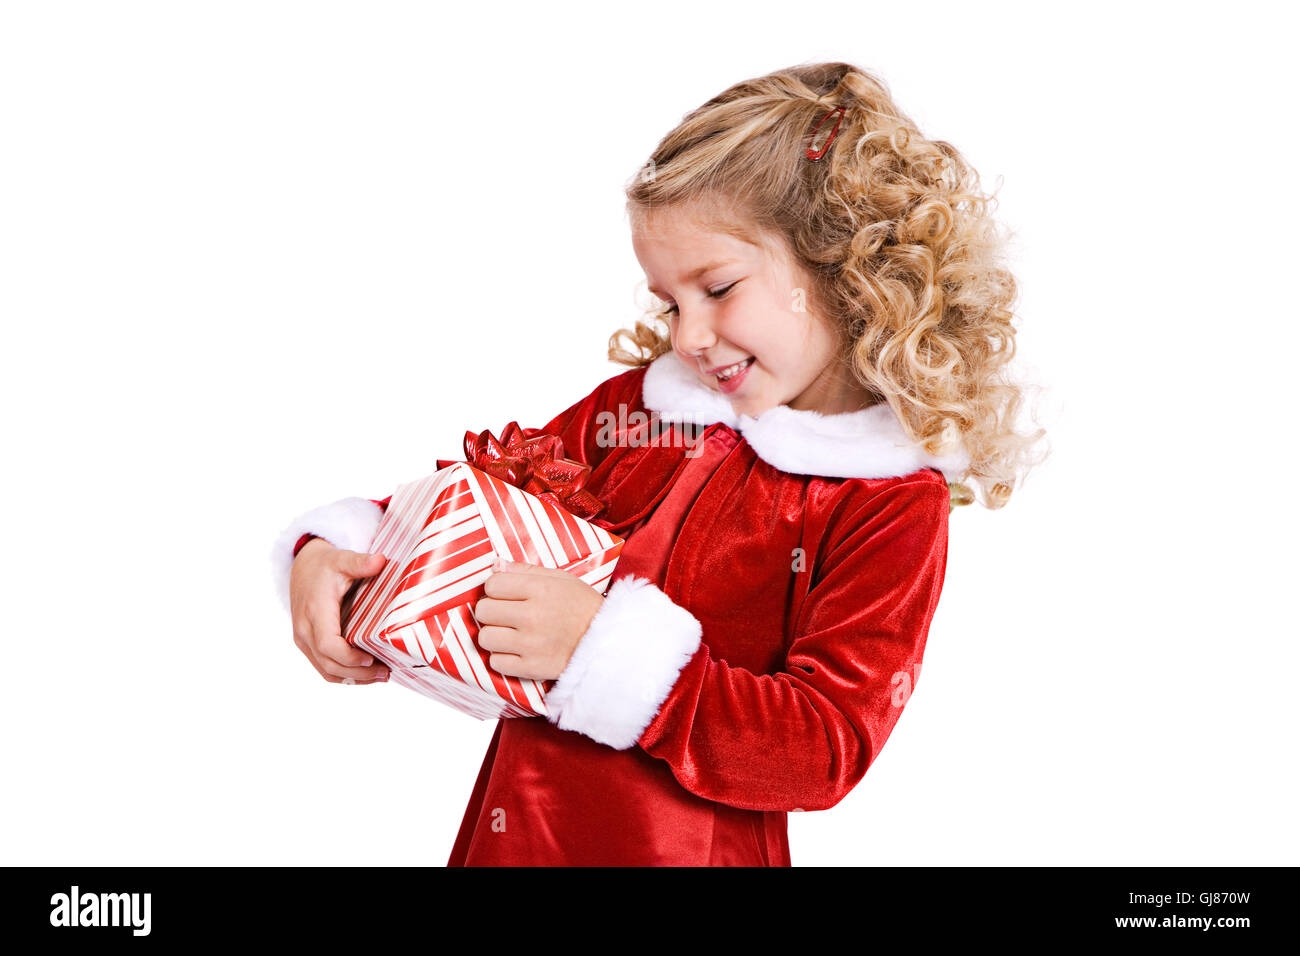 Little girl in red velvet holiday dress celebrates Christmas, isolated on white. Stock Photo